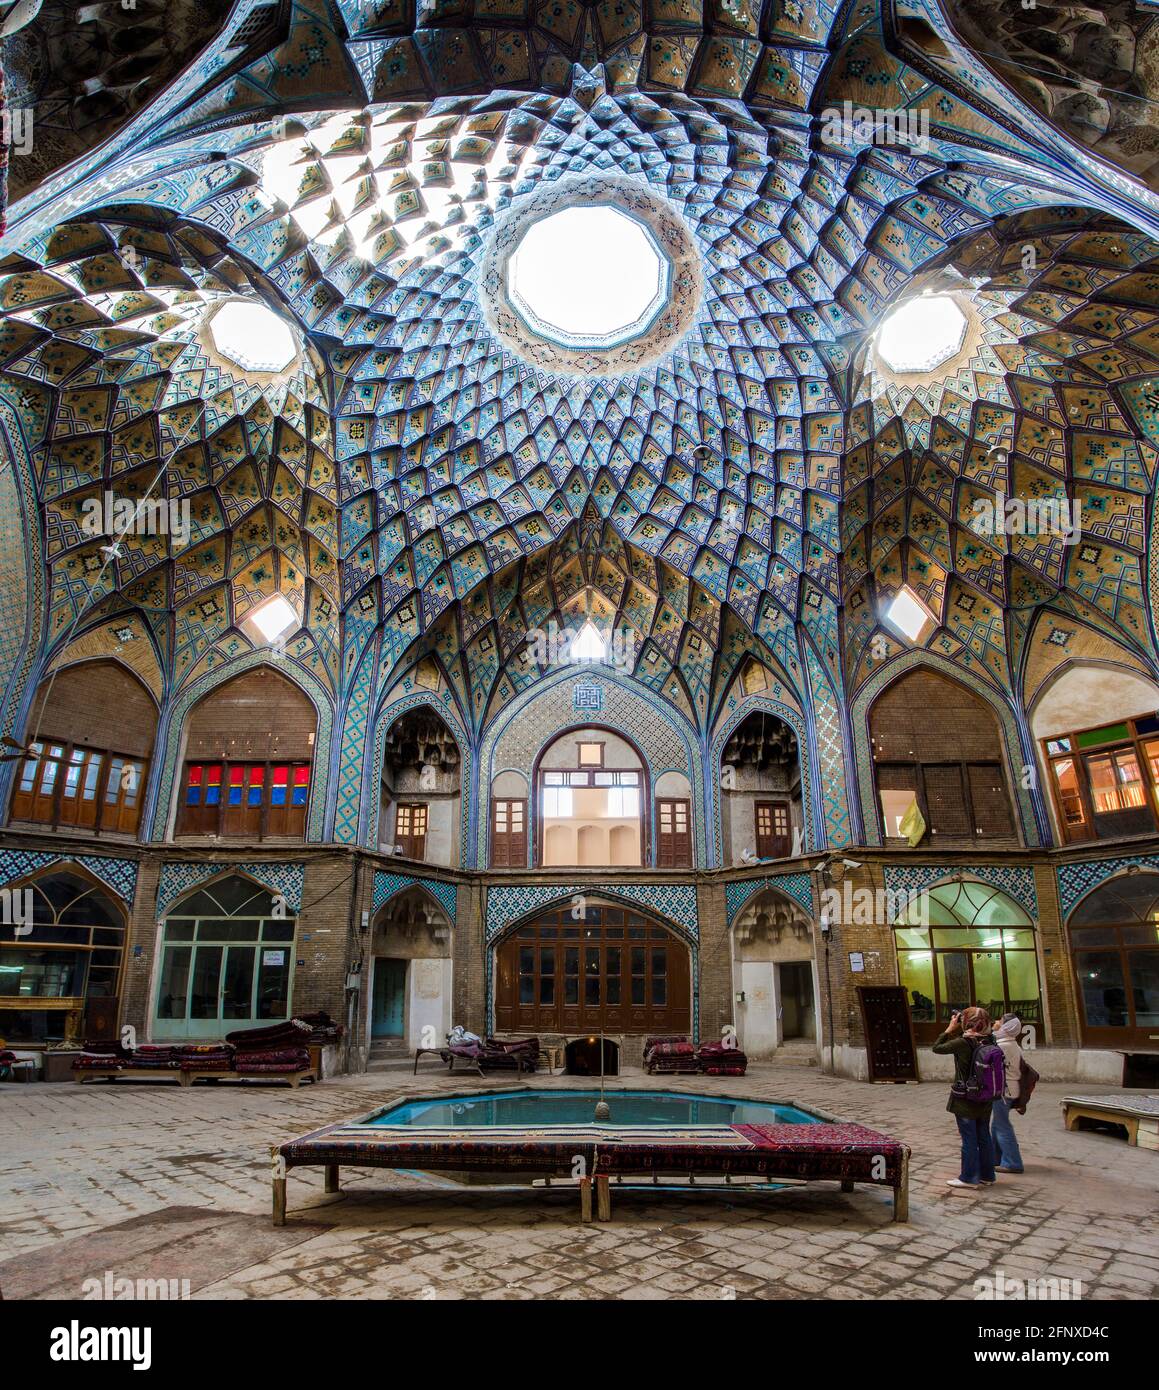 El esplendor de Aminoddole Caravanserai (Timche-ye Amin od-DWLEY), el ejemplo único del arquitecto persa medieval en el bazar de Kashan, Irán. Foto de stock